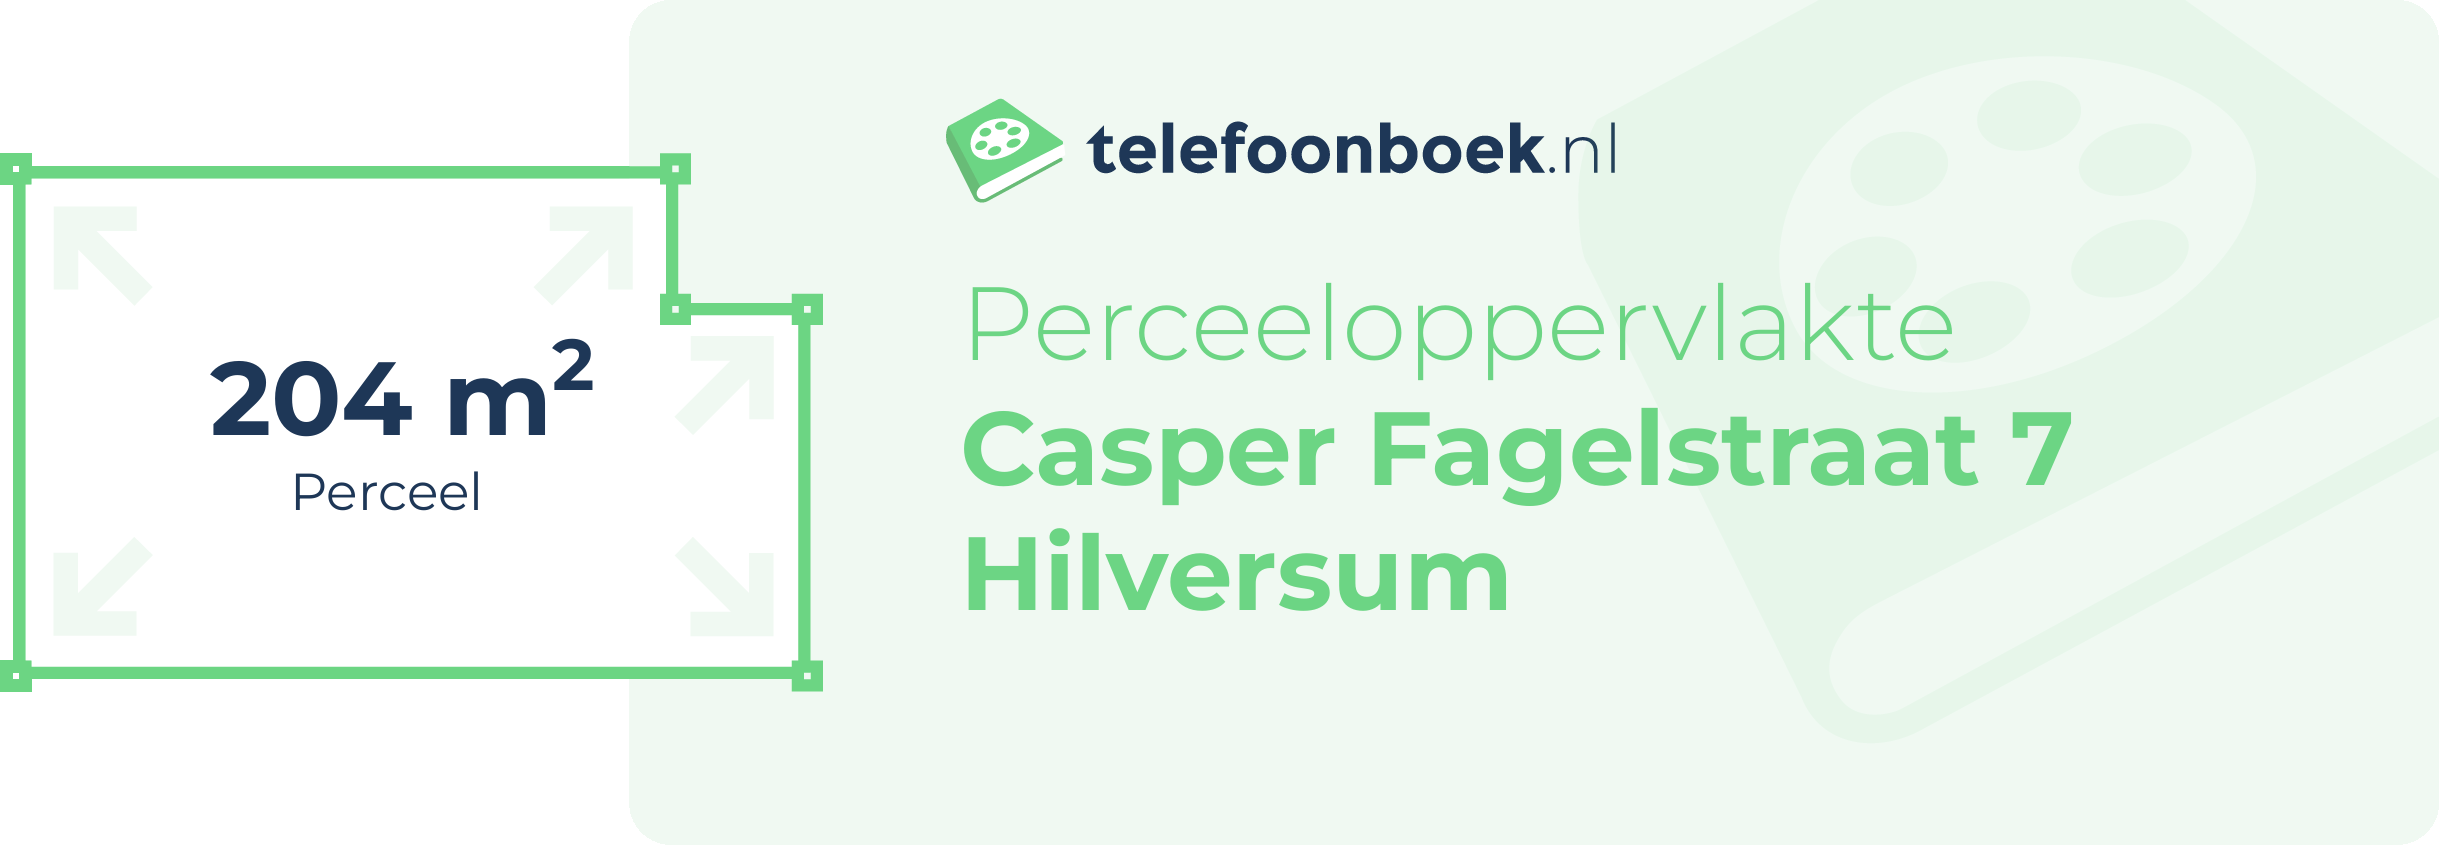 Perceeloppervlakte Casper Fagelstraat 7 Hilversum